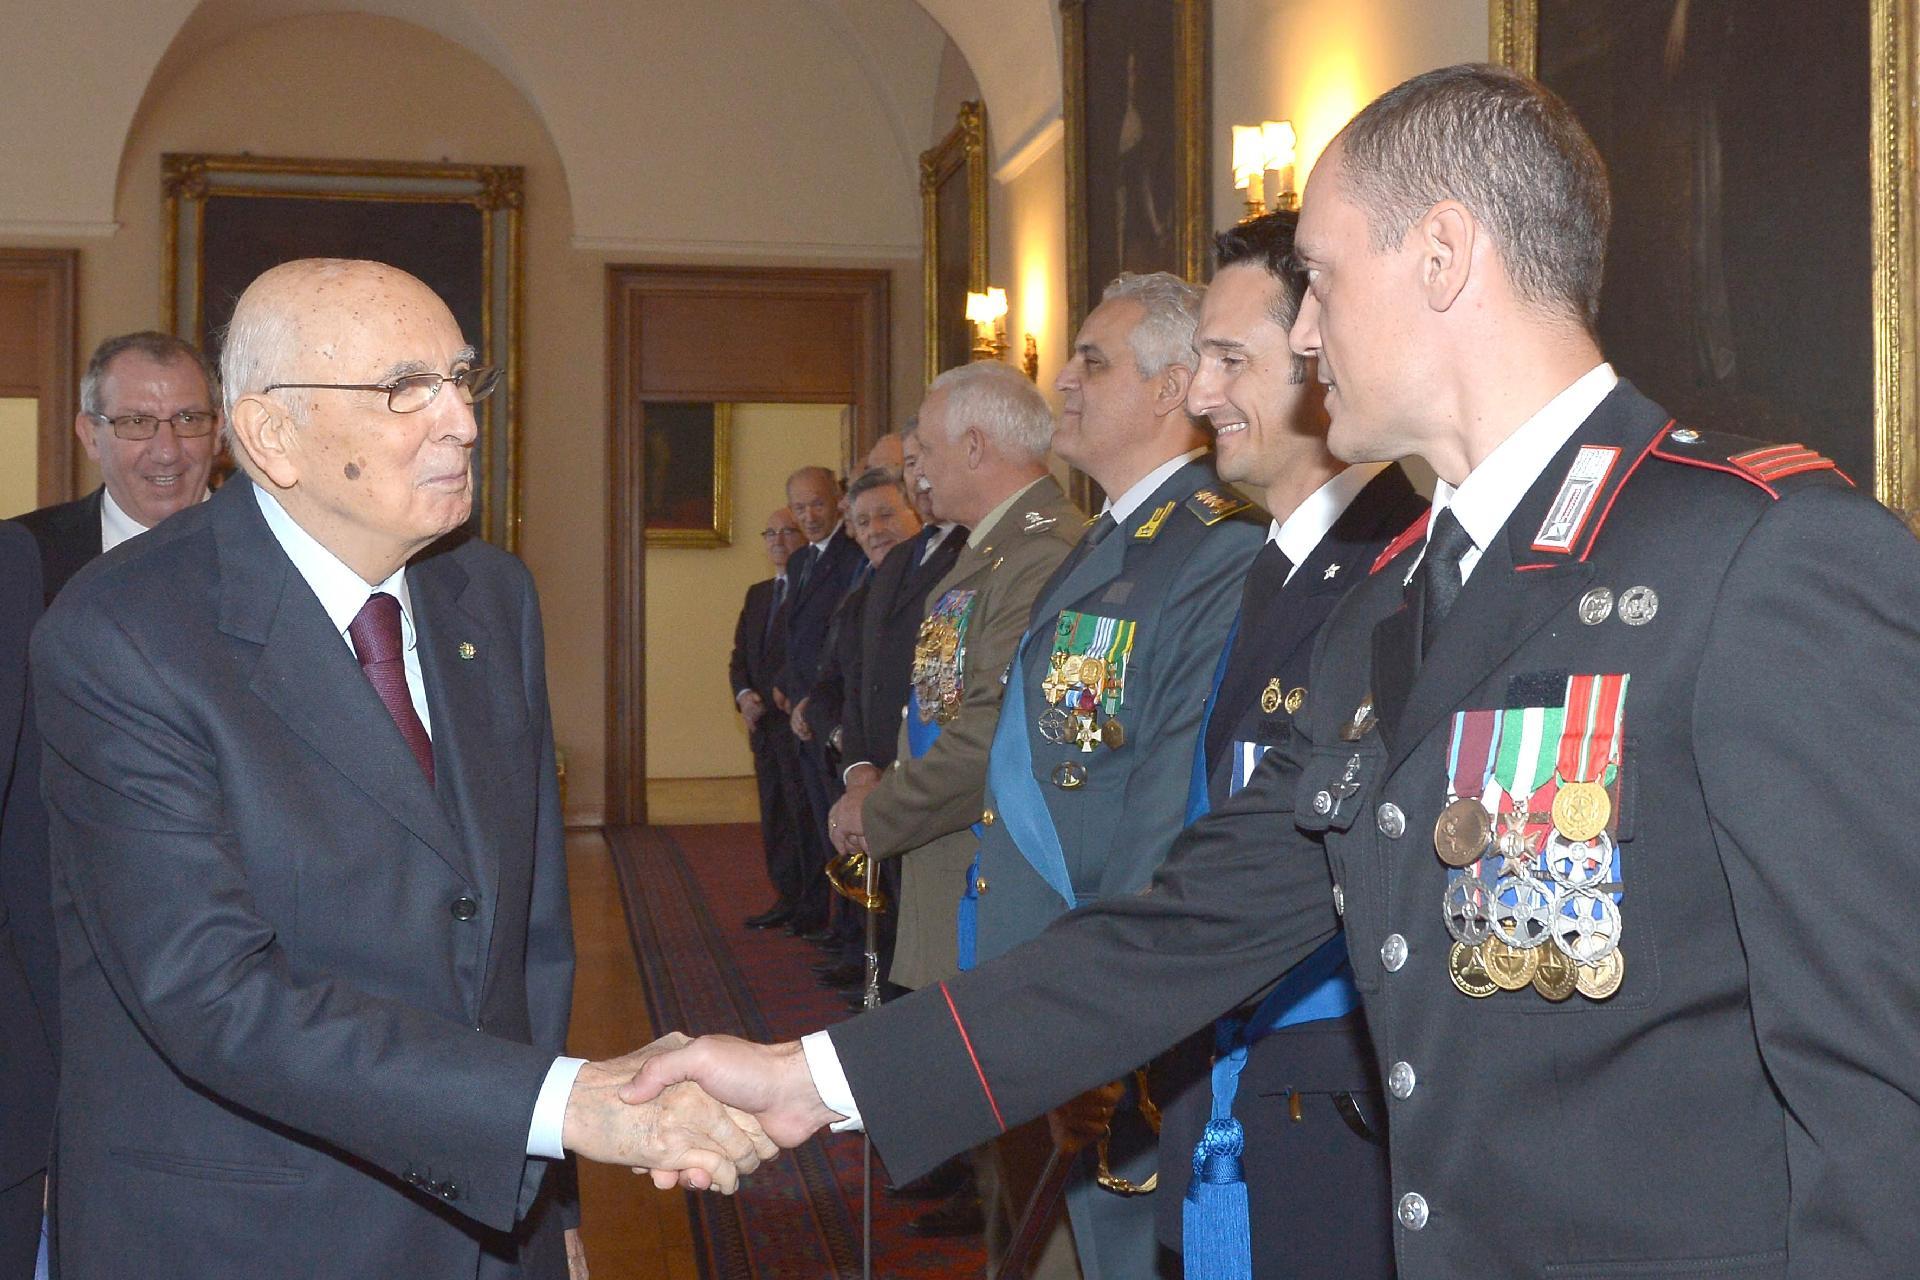 Il Presidente Giorgio Napolitano con i nuovi decorati dell'Ordine Militare d'Italia in occasione della cerimonia di consegna delle insegne nella ricorrenza del Giorno dell'Unità Nazionale e Giornata delle Forze Armate